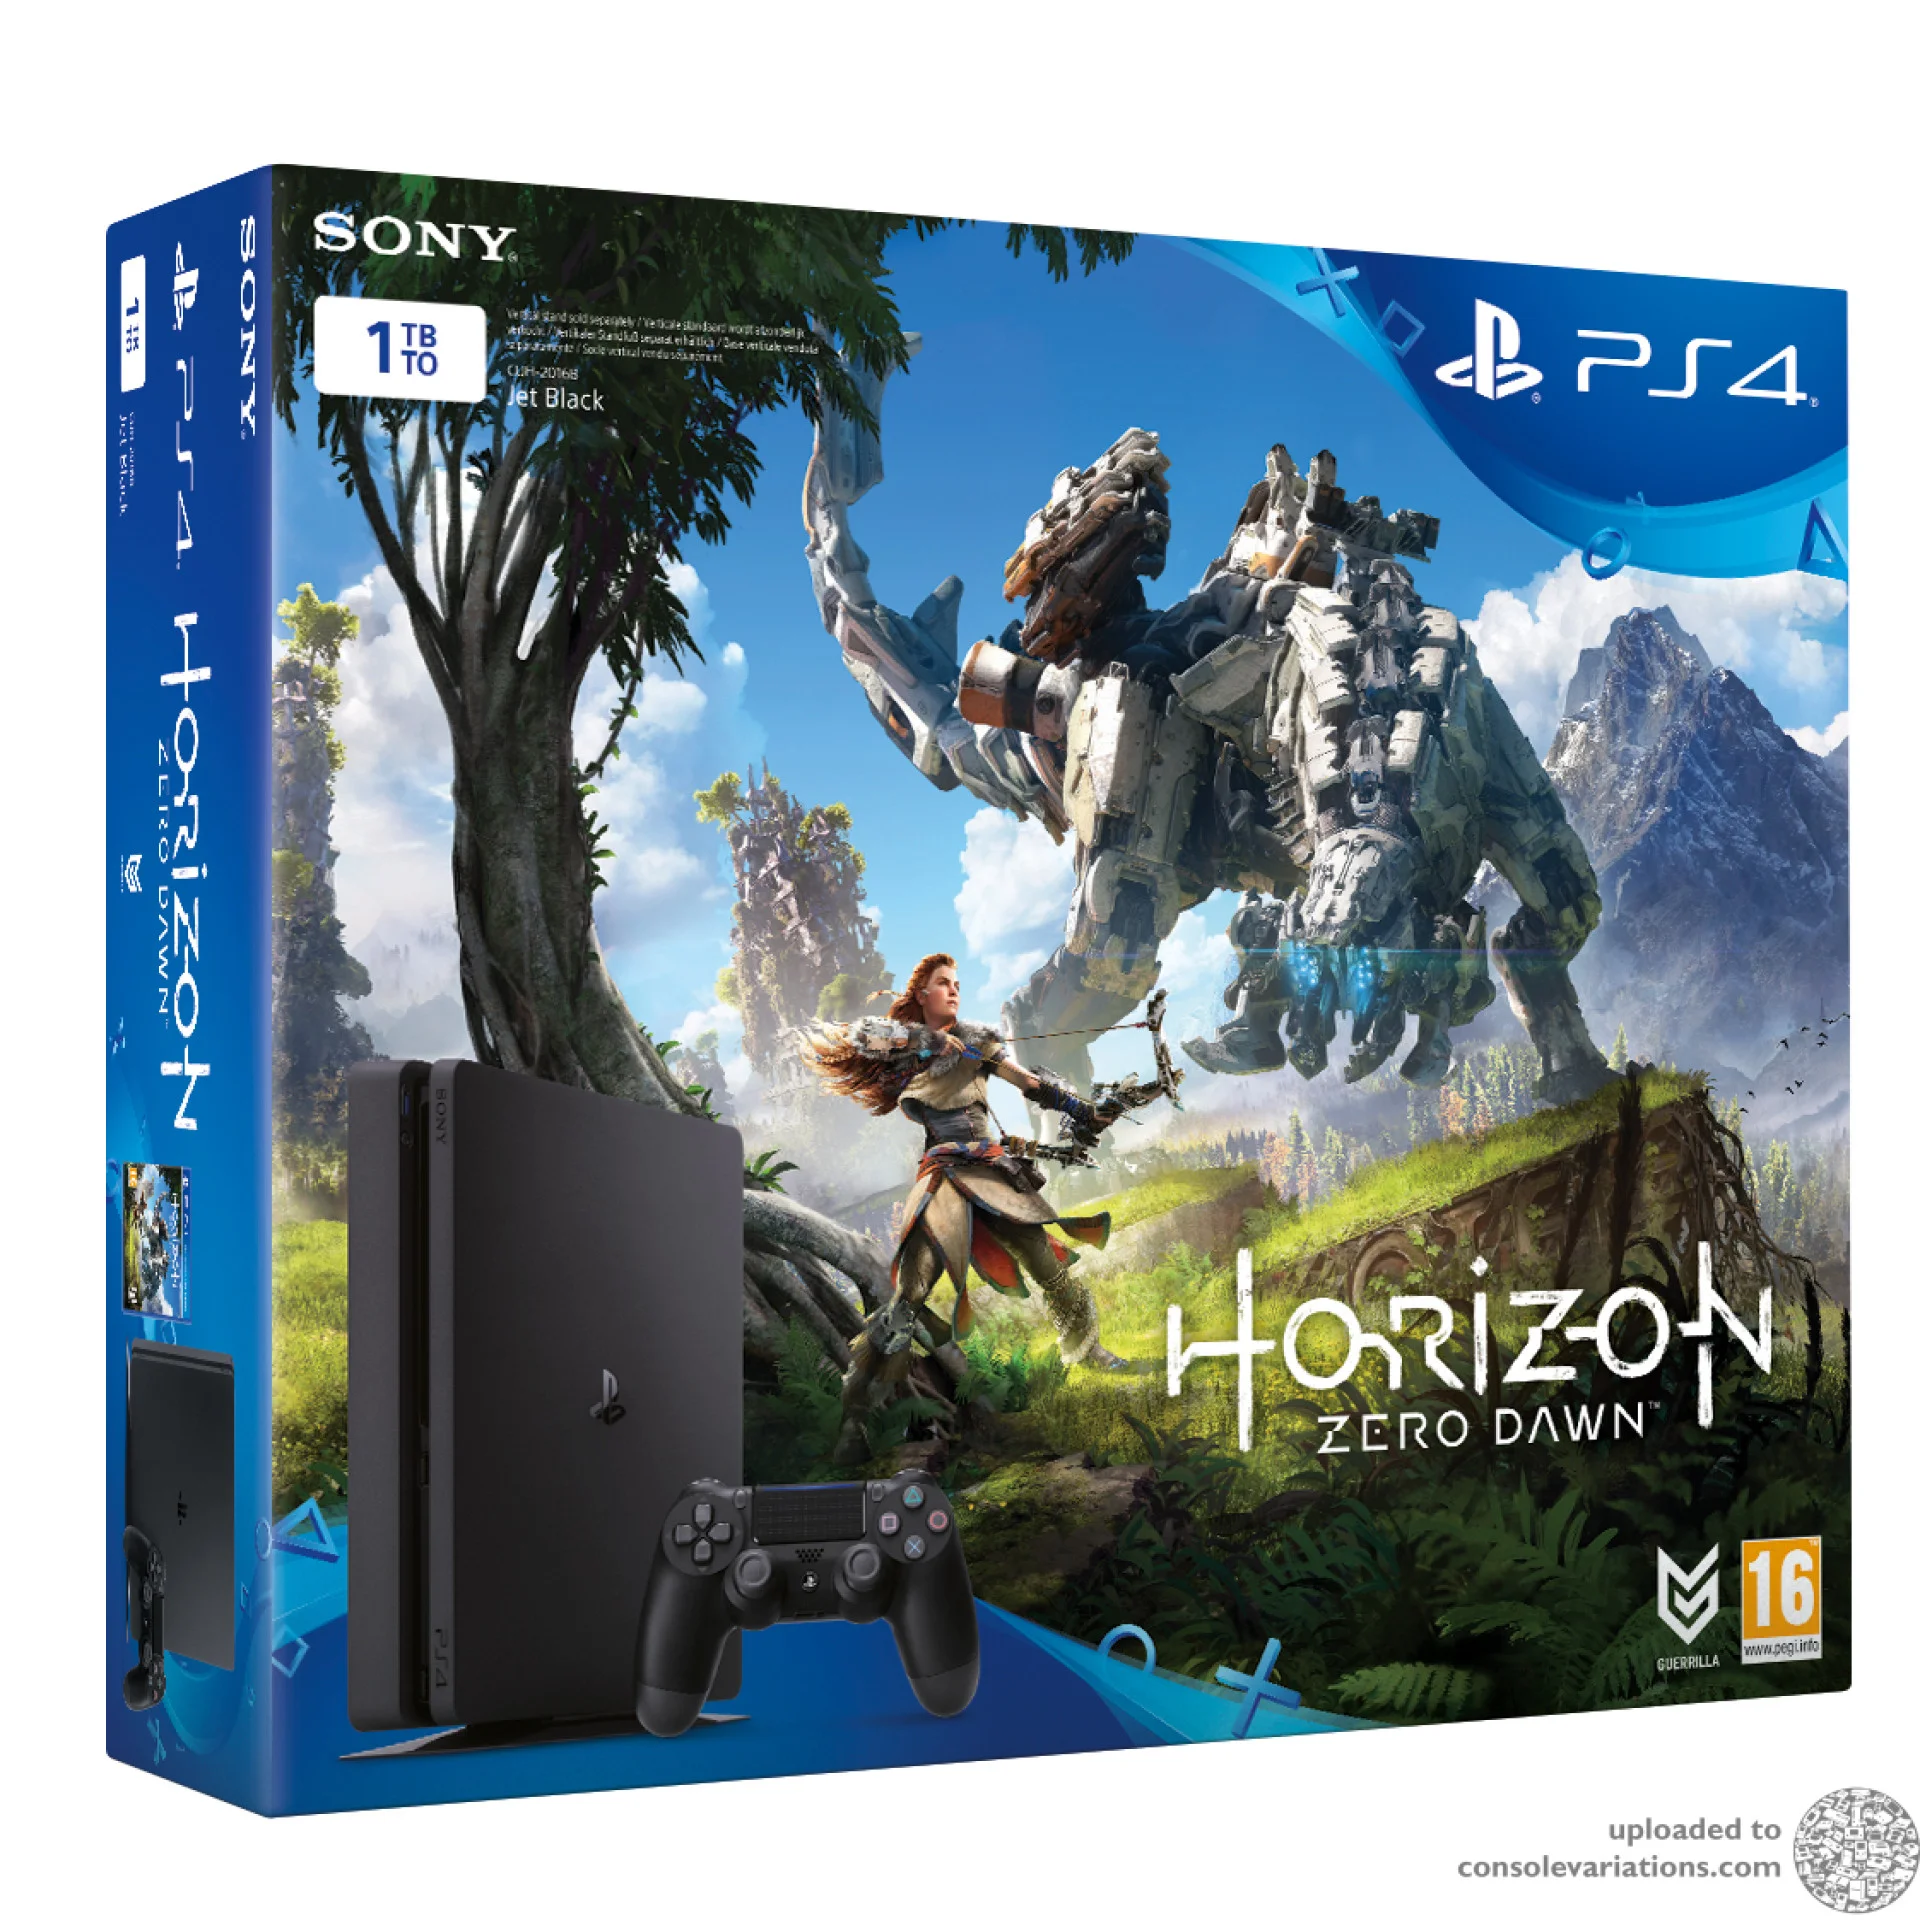  Sony PlayStation 4 Slim Horizon Zero Dawn Bundle [EU]